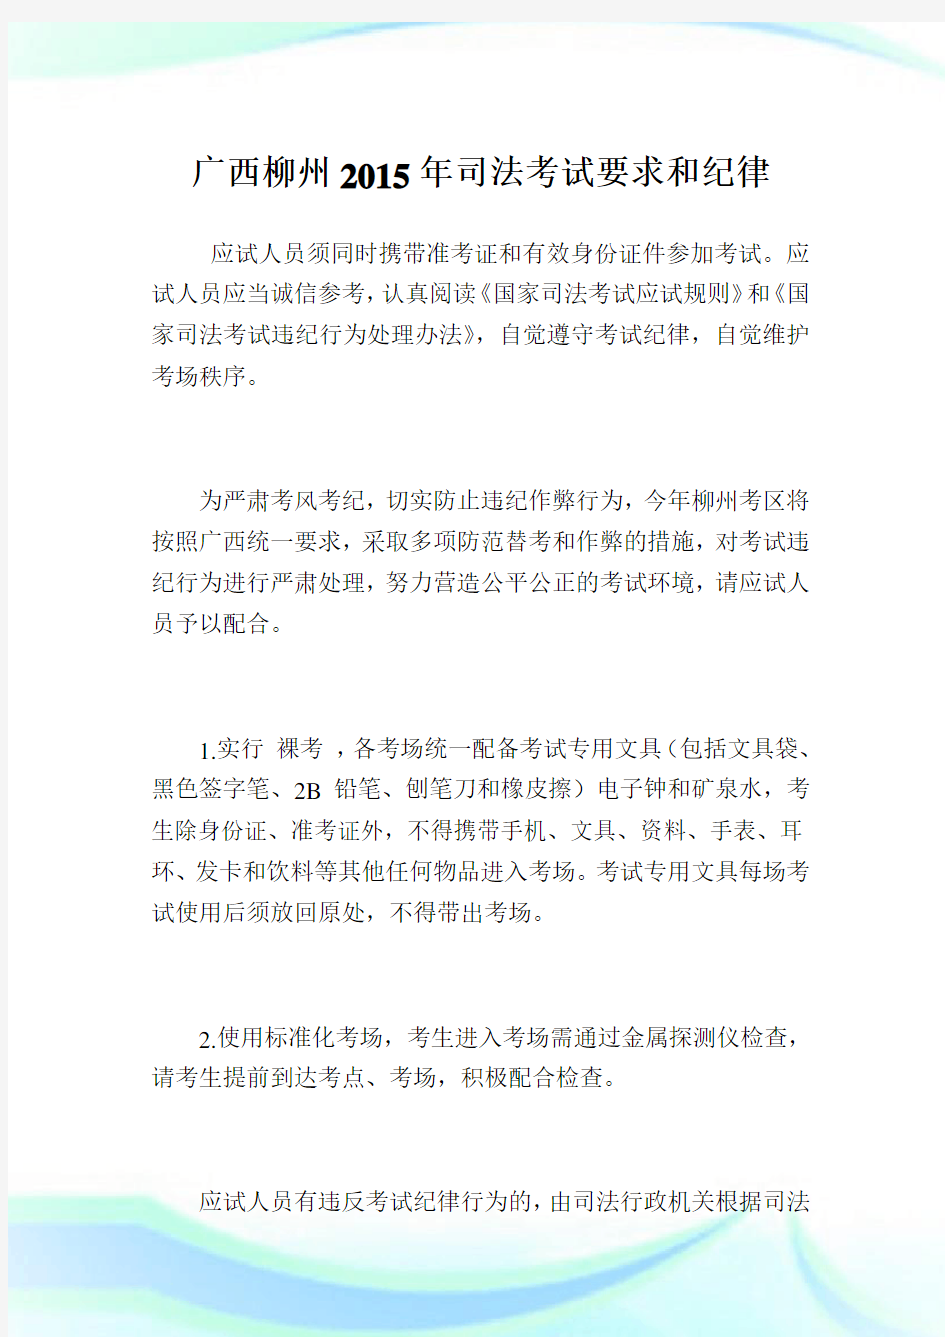 广西柳州2015年司法考试要求和纪律.doc